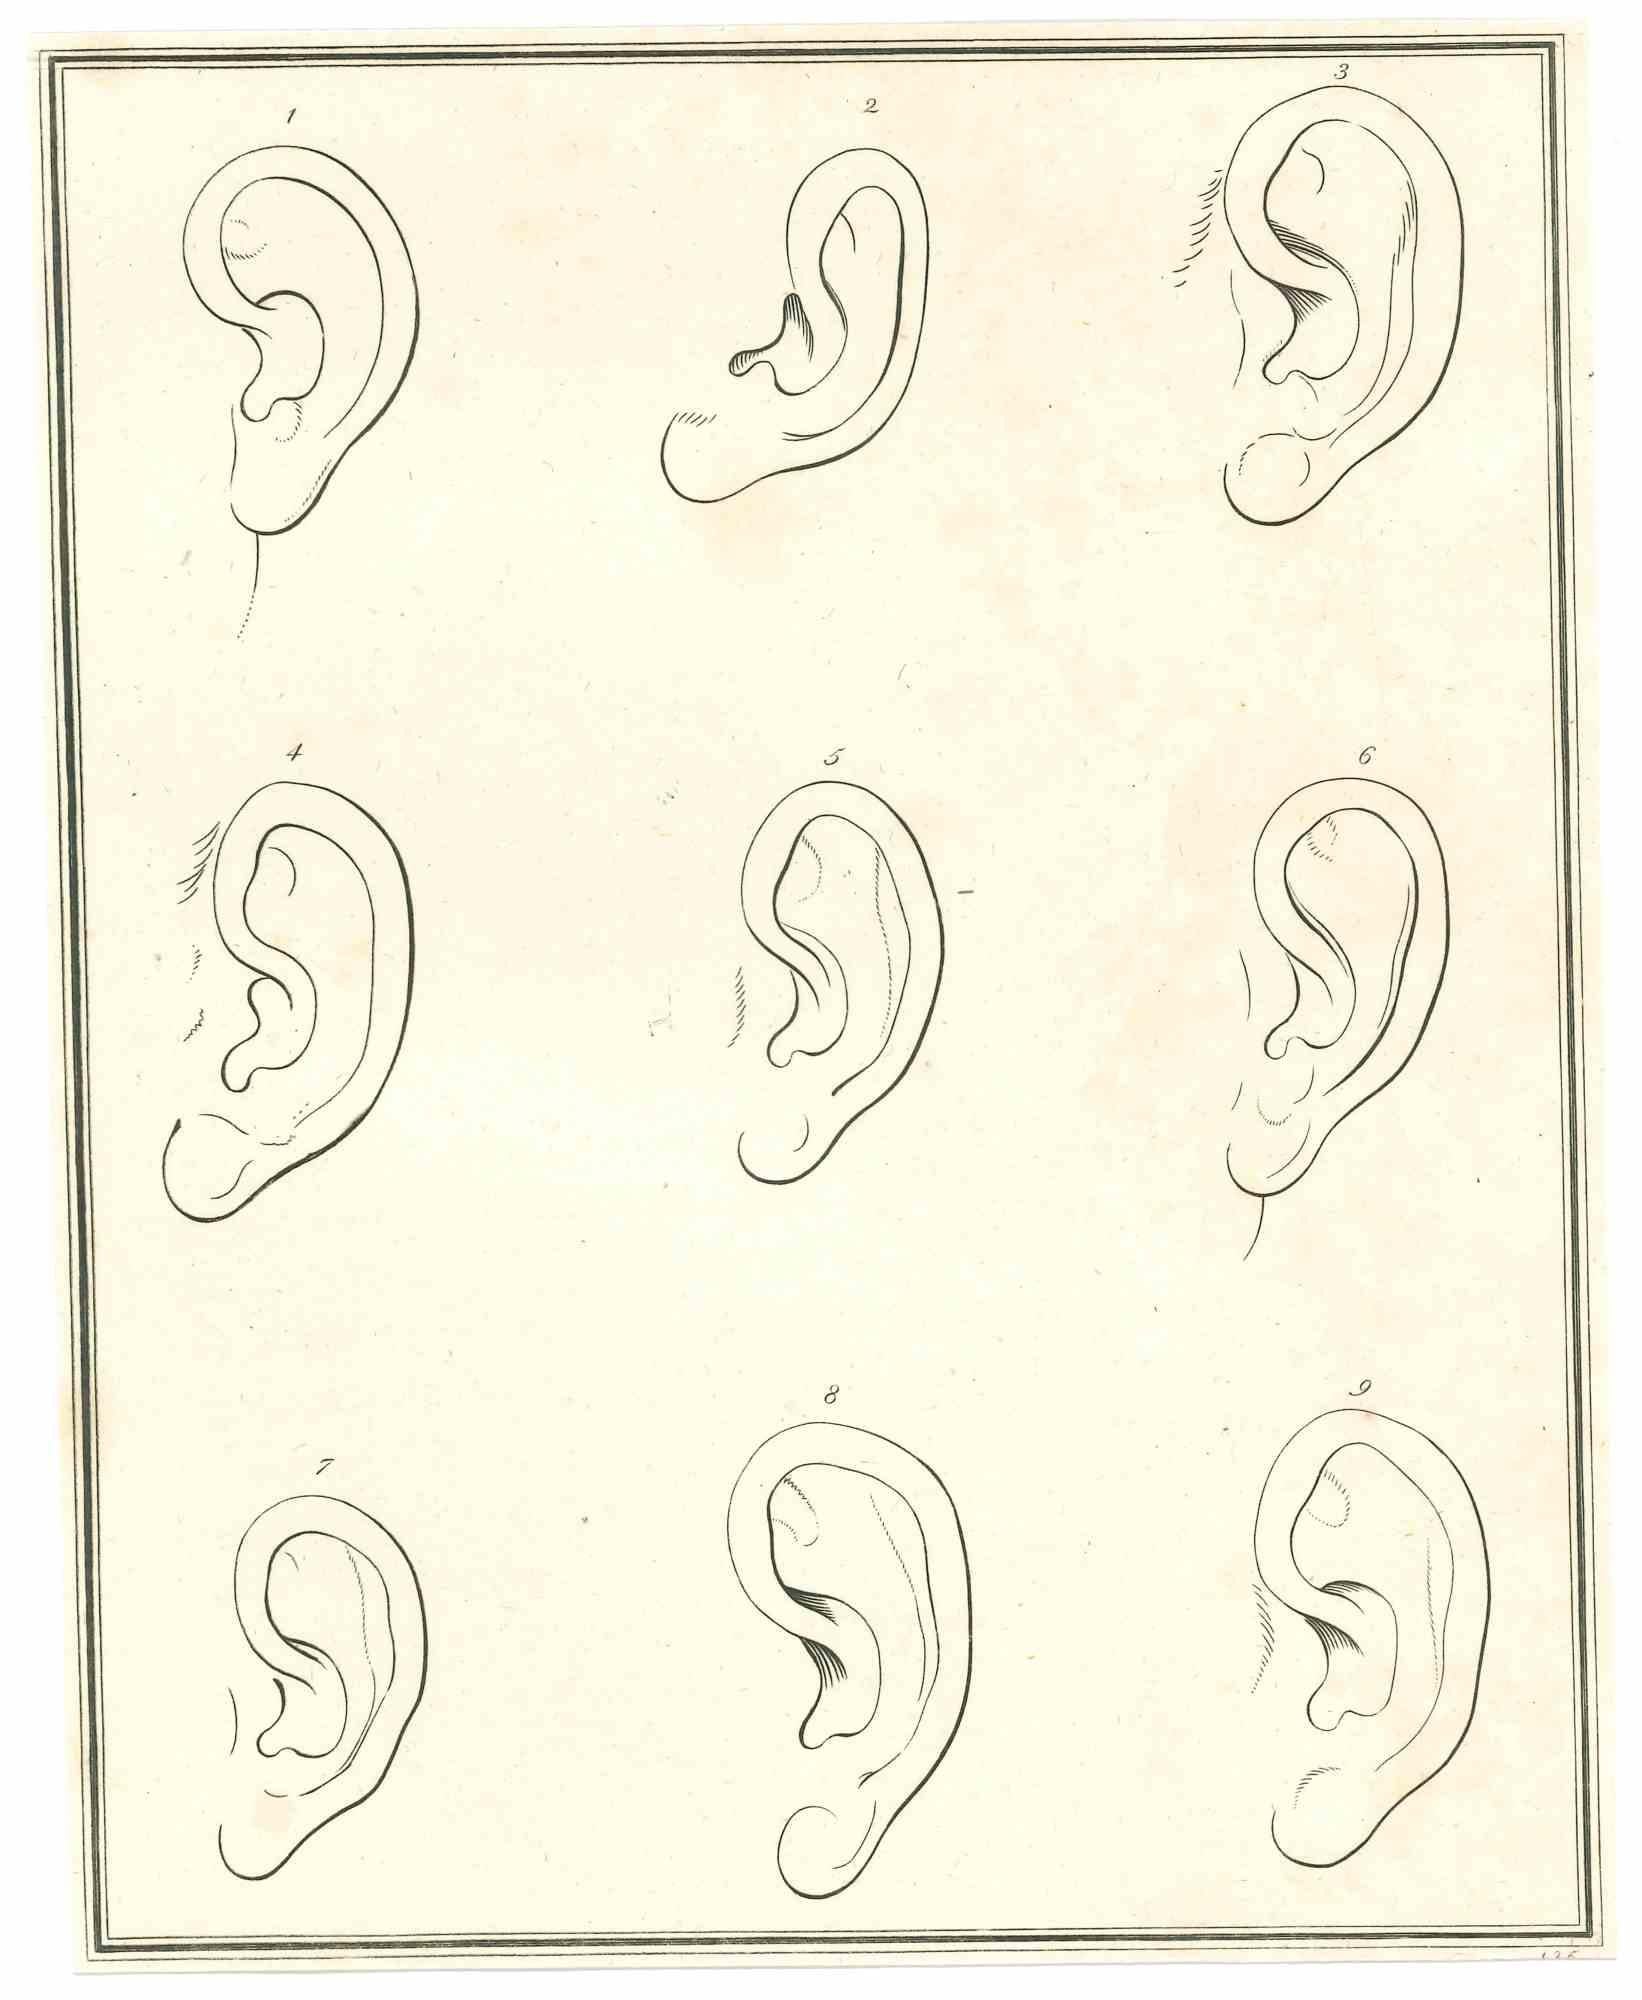 The Physiognomy - The Ears ist eine Originalradierung von Thomas Holloway für Johann Caspar Lavaters "Essays on Physiognomy, Designed to Promote the Knowledge and the Love of Mankind", London, Bensley, 1810. 

Gute Bedingungen.

Johann Caspar